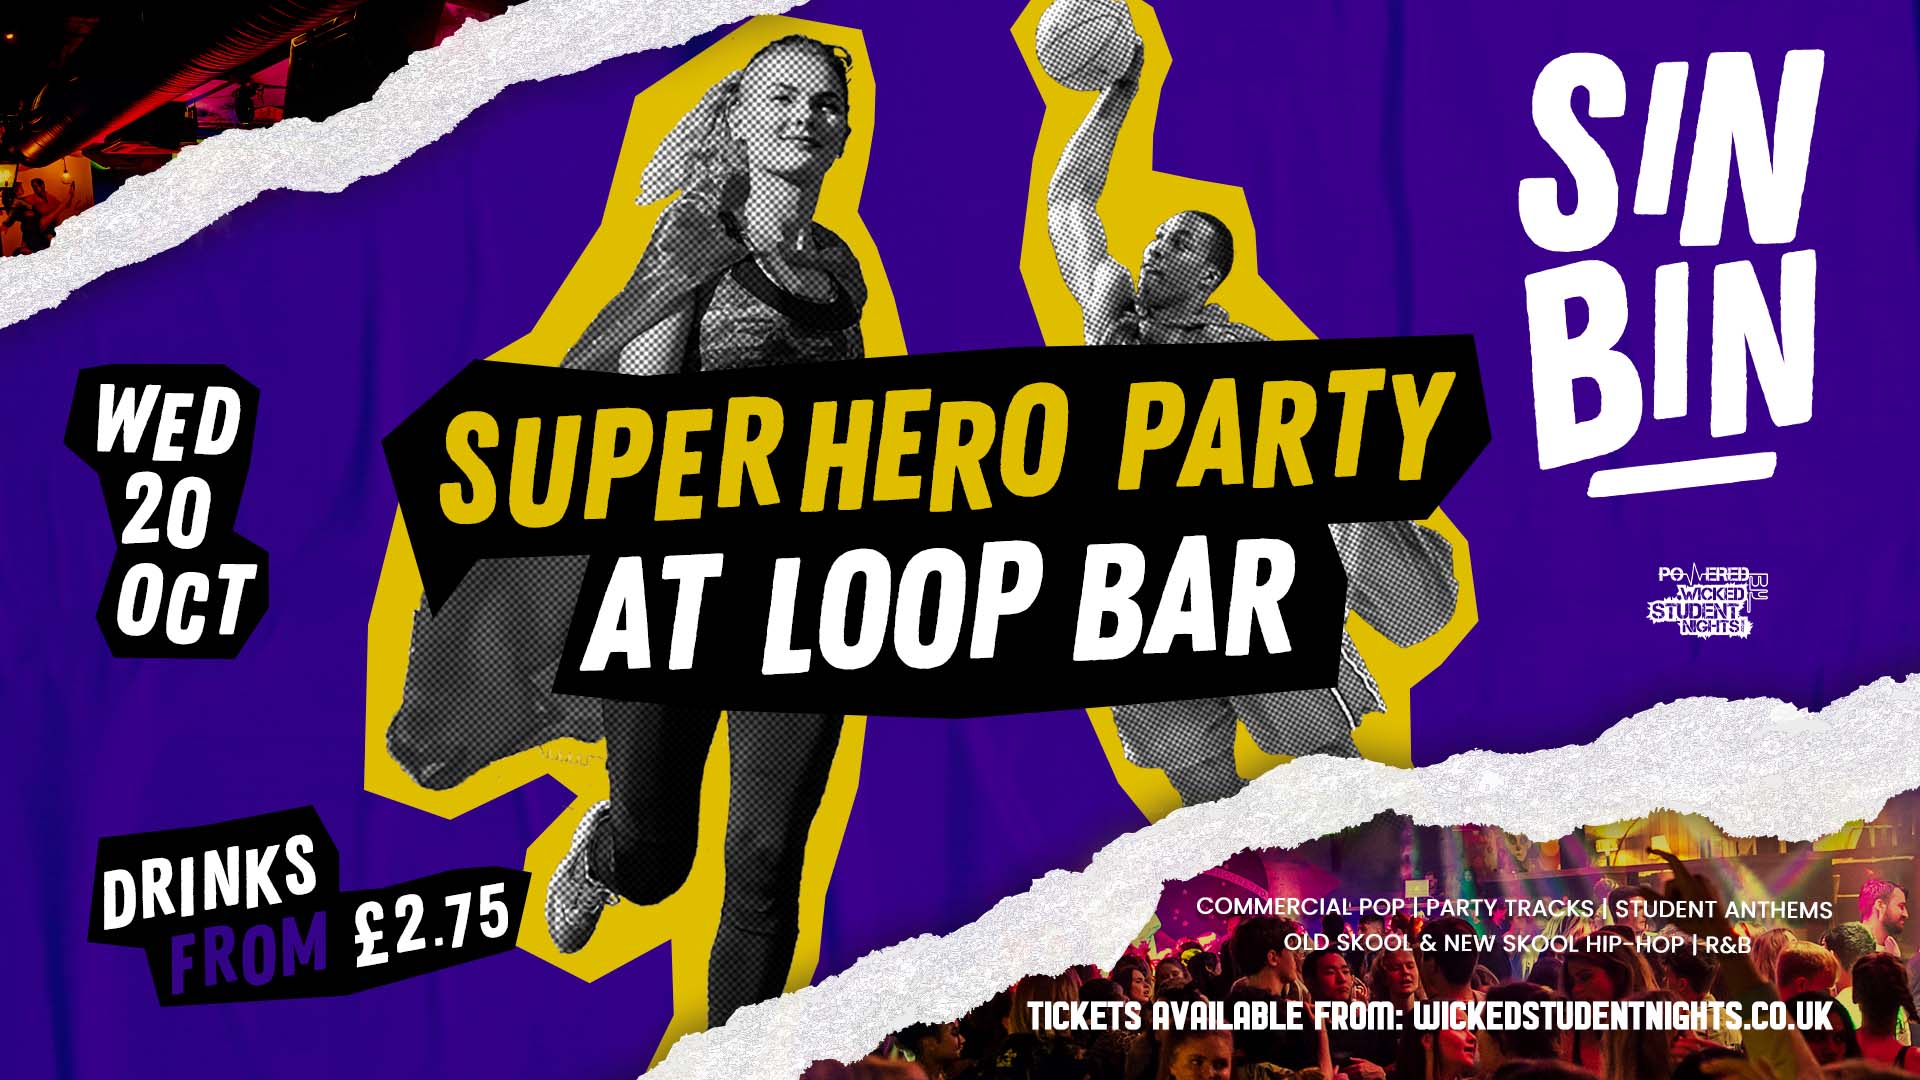 SIN BIN Sports Night at Loop Bar - SUPERHERO PARTY at The Loop Bar